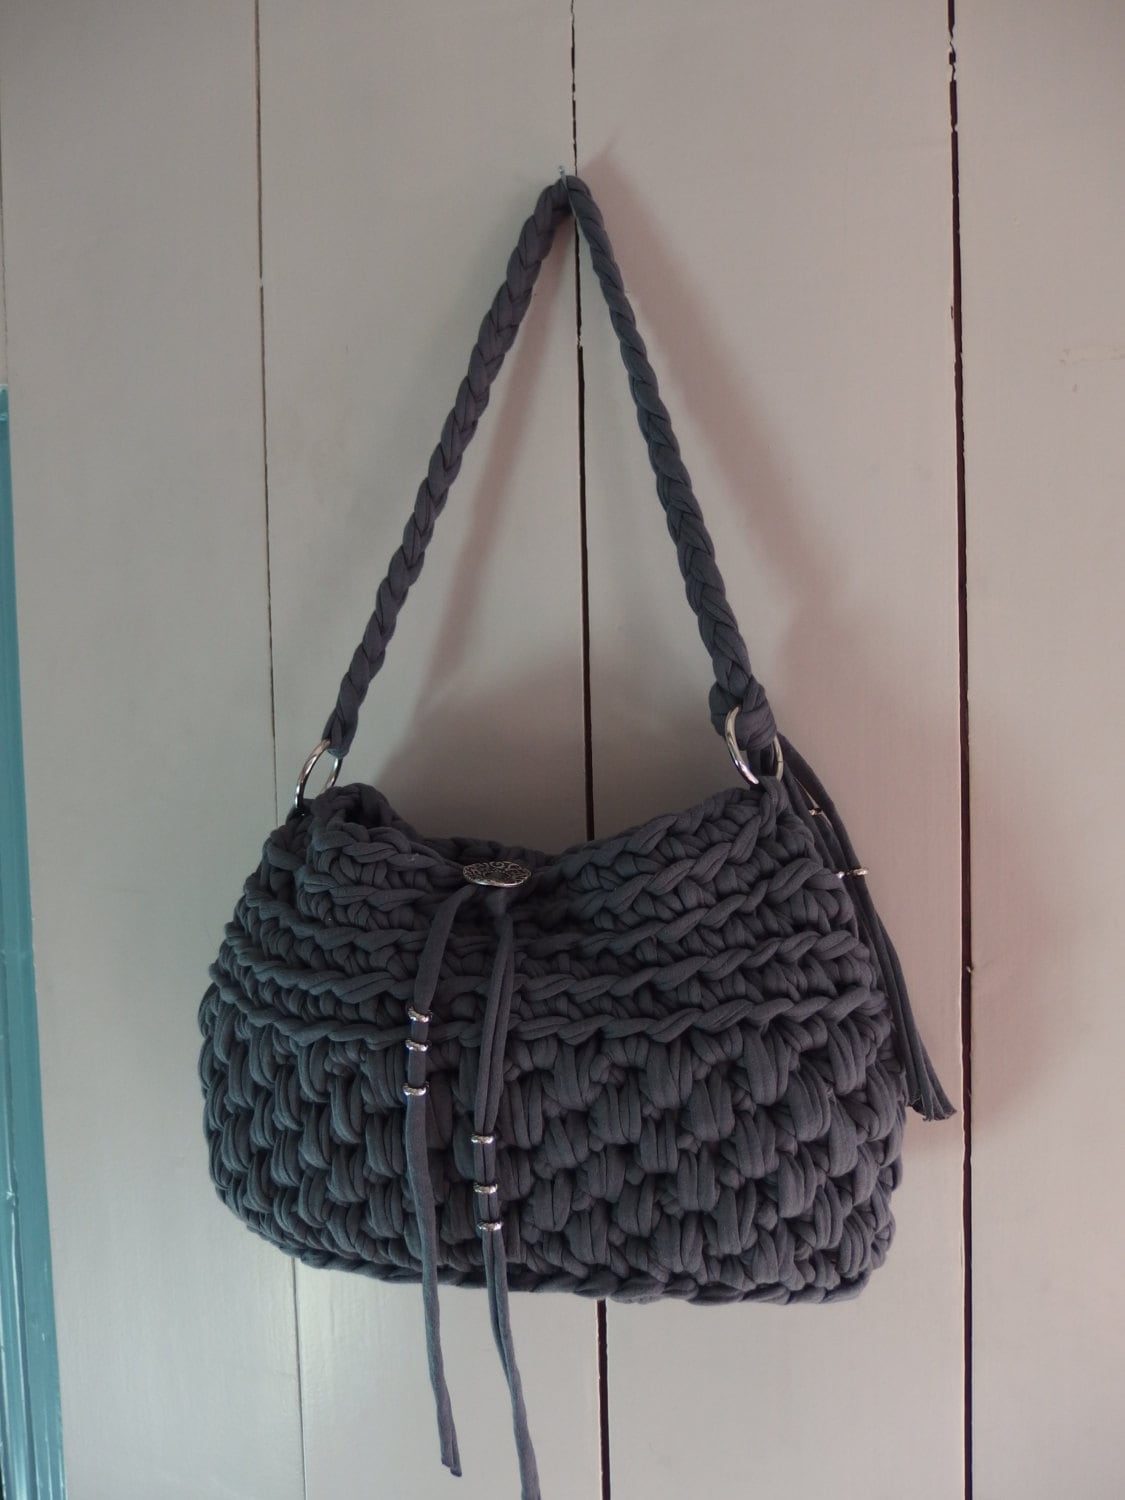 Grey handbag/shoulder bag crochet from t-shirt yarn.